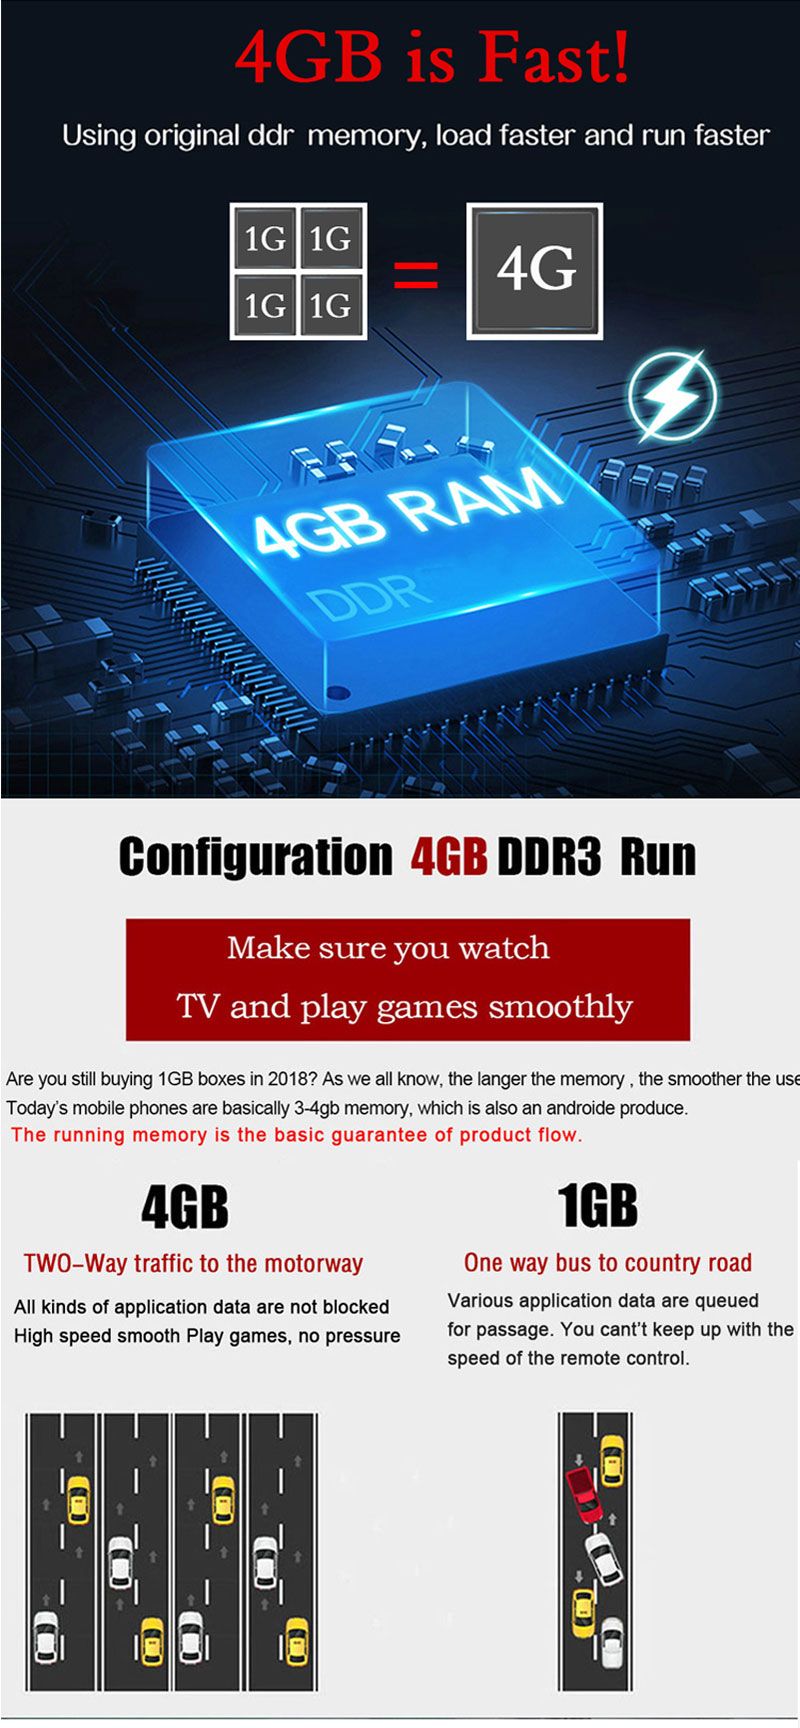 MX10-Pro-Allwinner-H6-4GB-RAM-32GB-ROM-24G-WIFI-Android-90-6K-4K-TV-Box-1492324